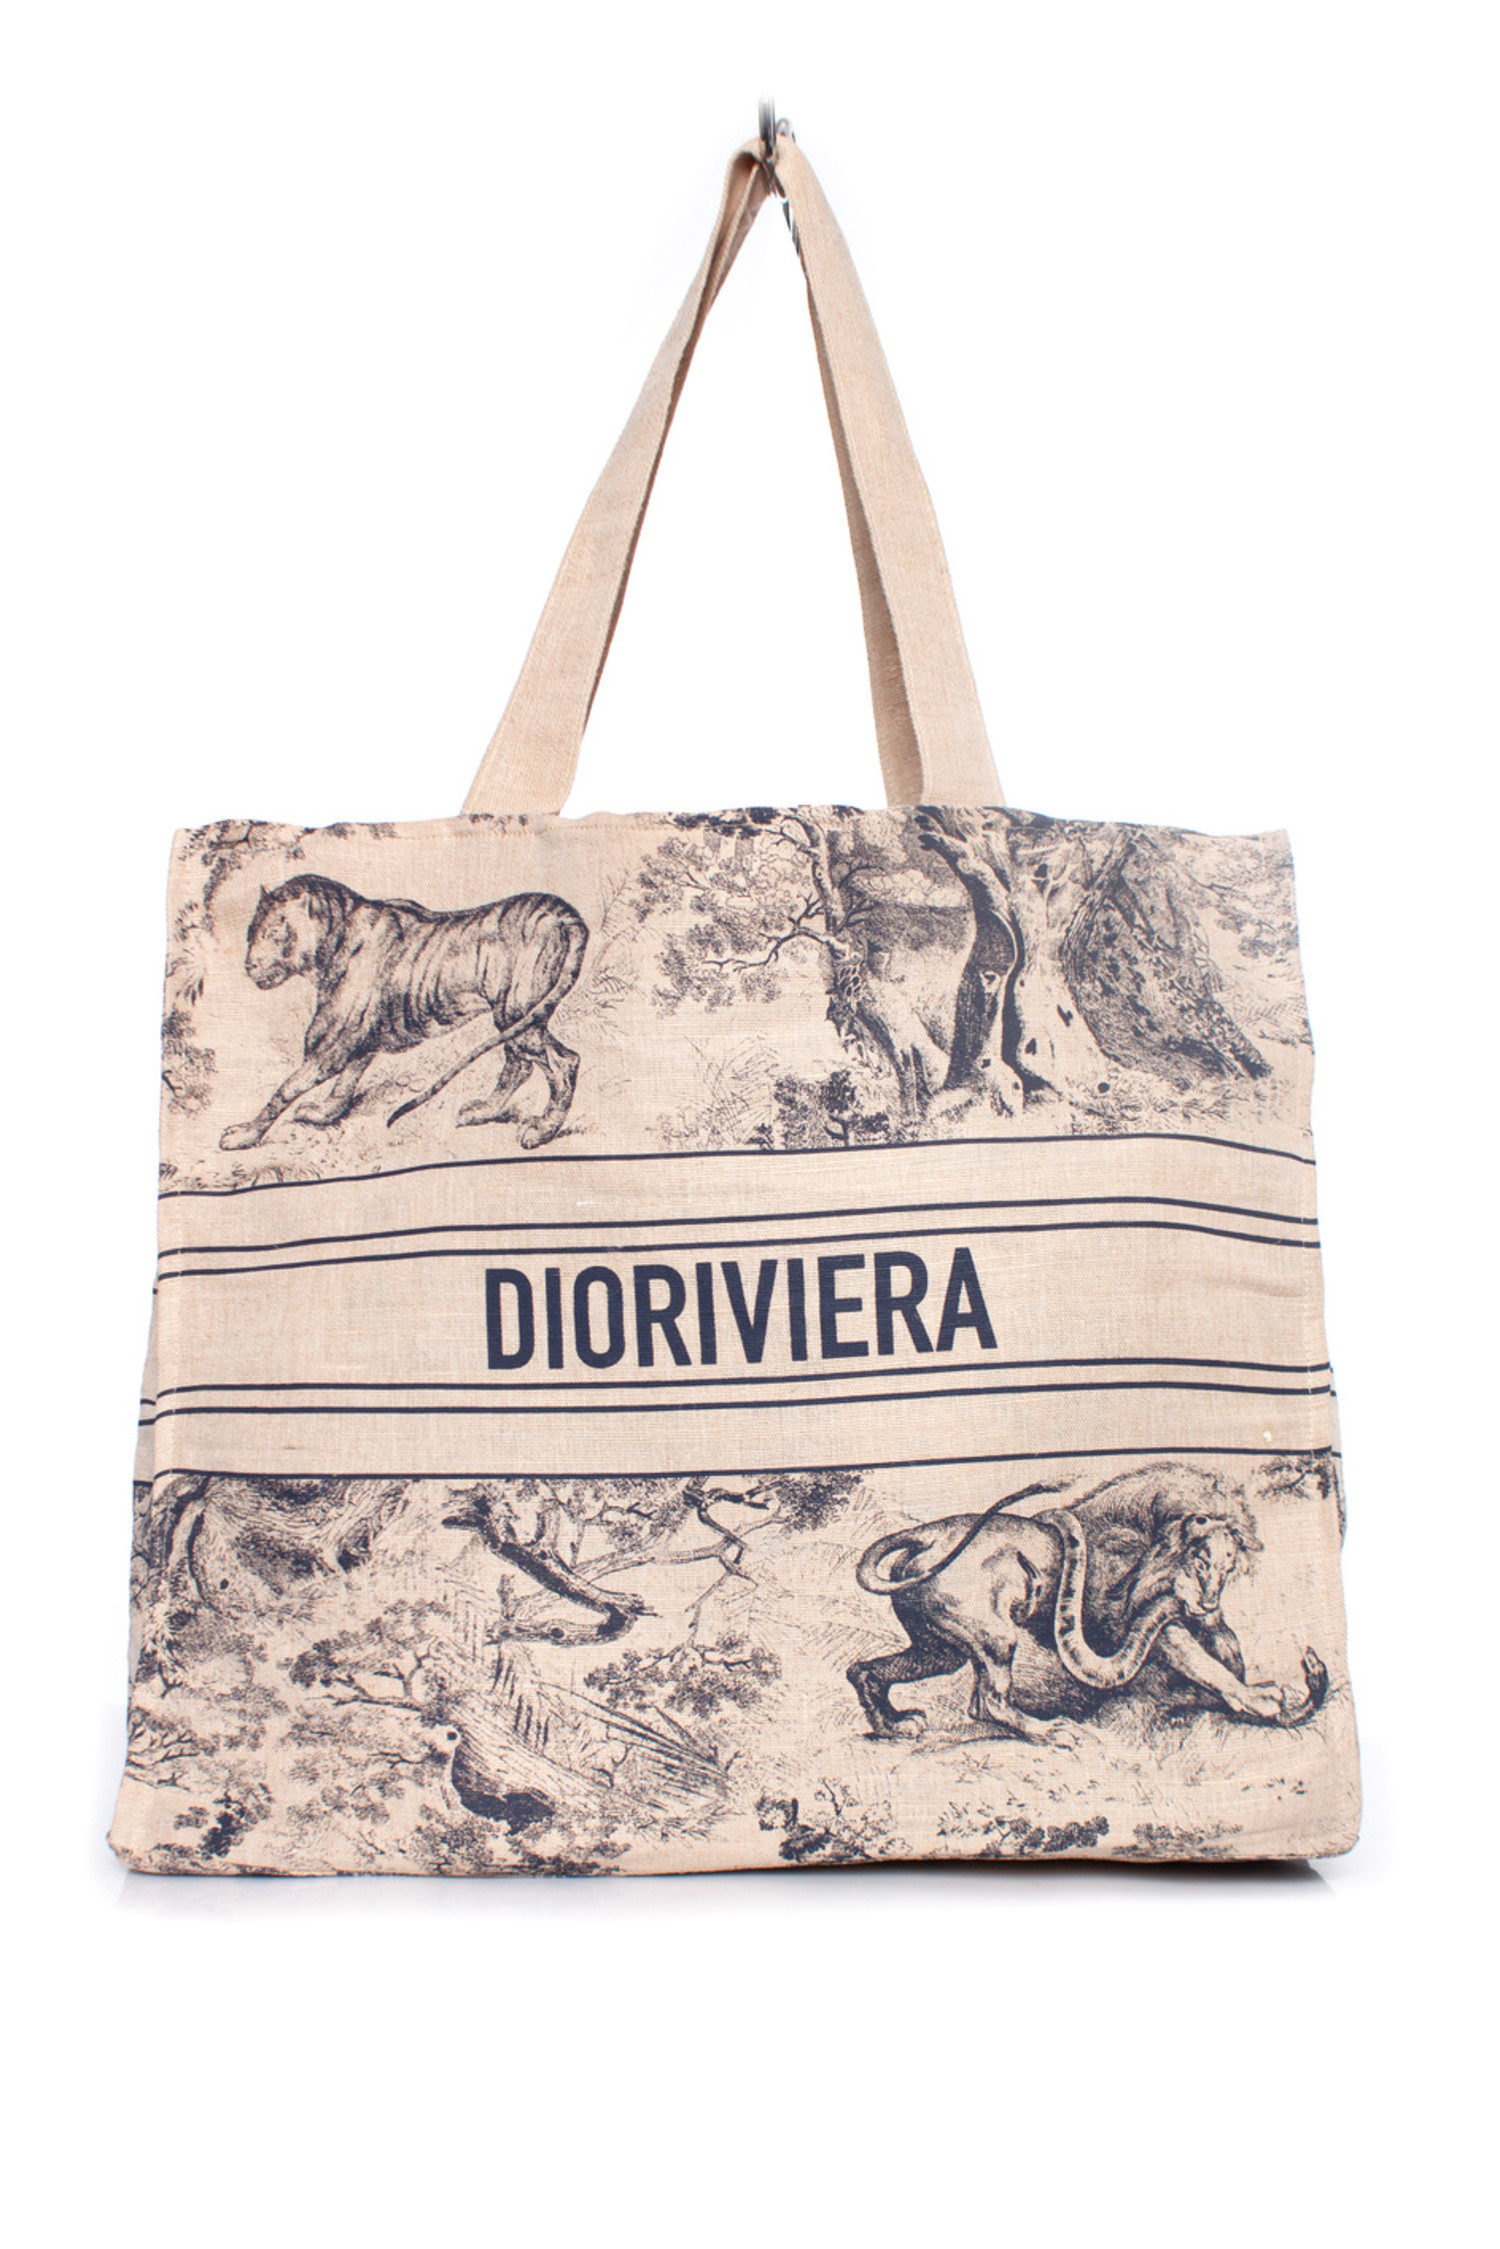 Christian Dior Beach Tote Book Bag